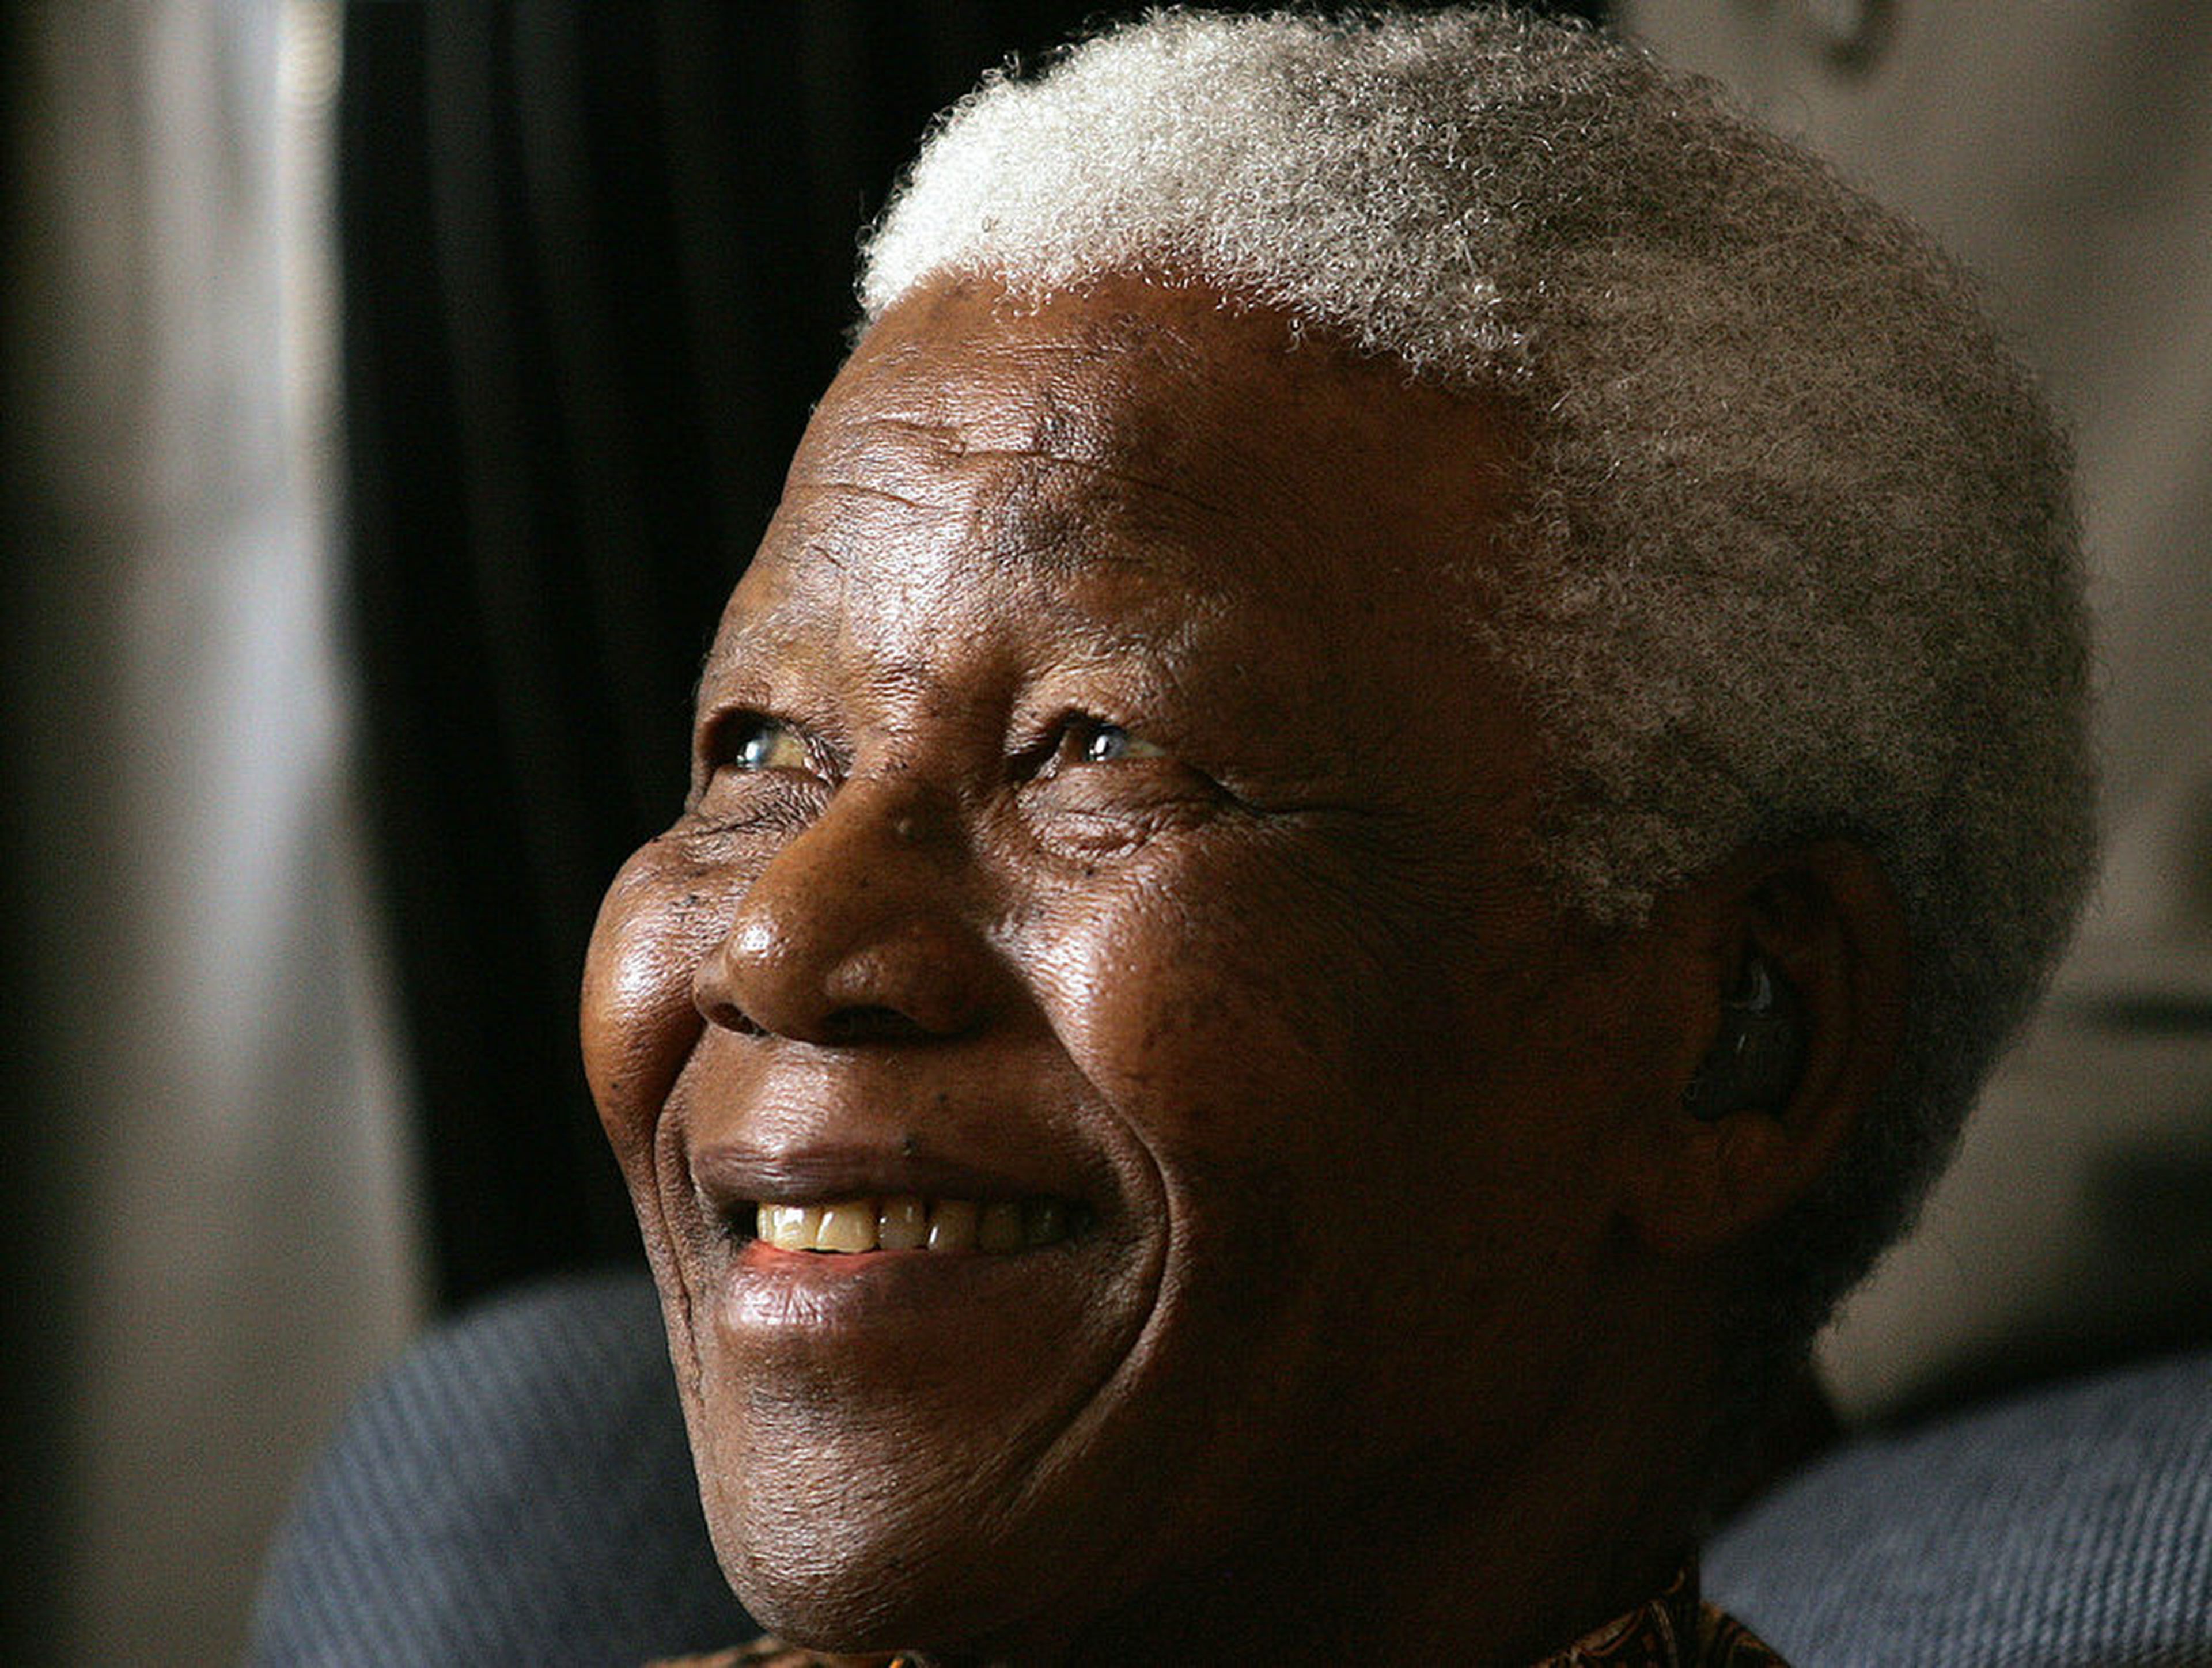 La batalla de Mandela contra el régimen de apartheid de su país fue un testimonio de su valor, resistencia, humildad y perdón.